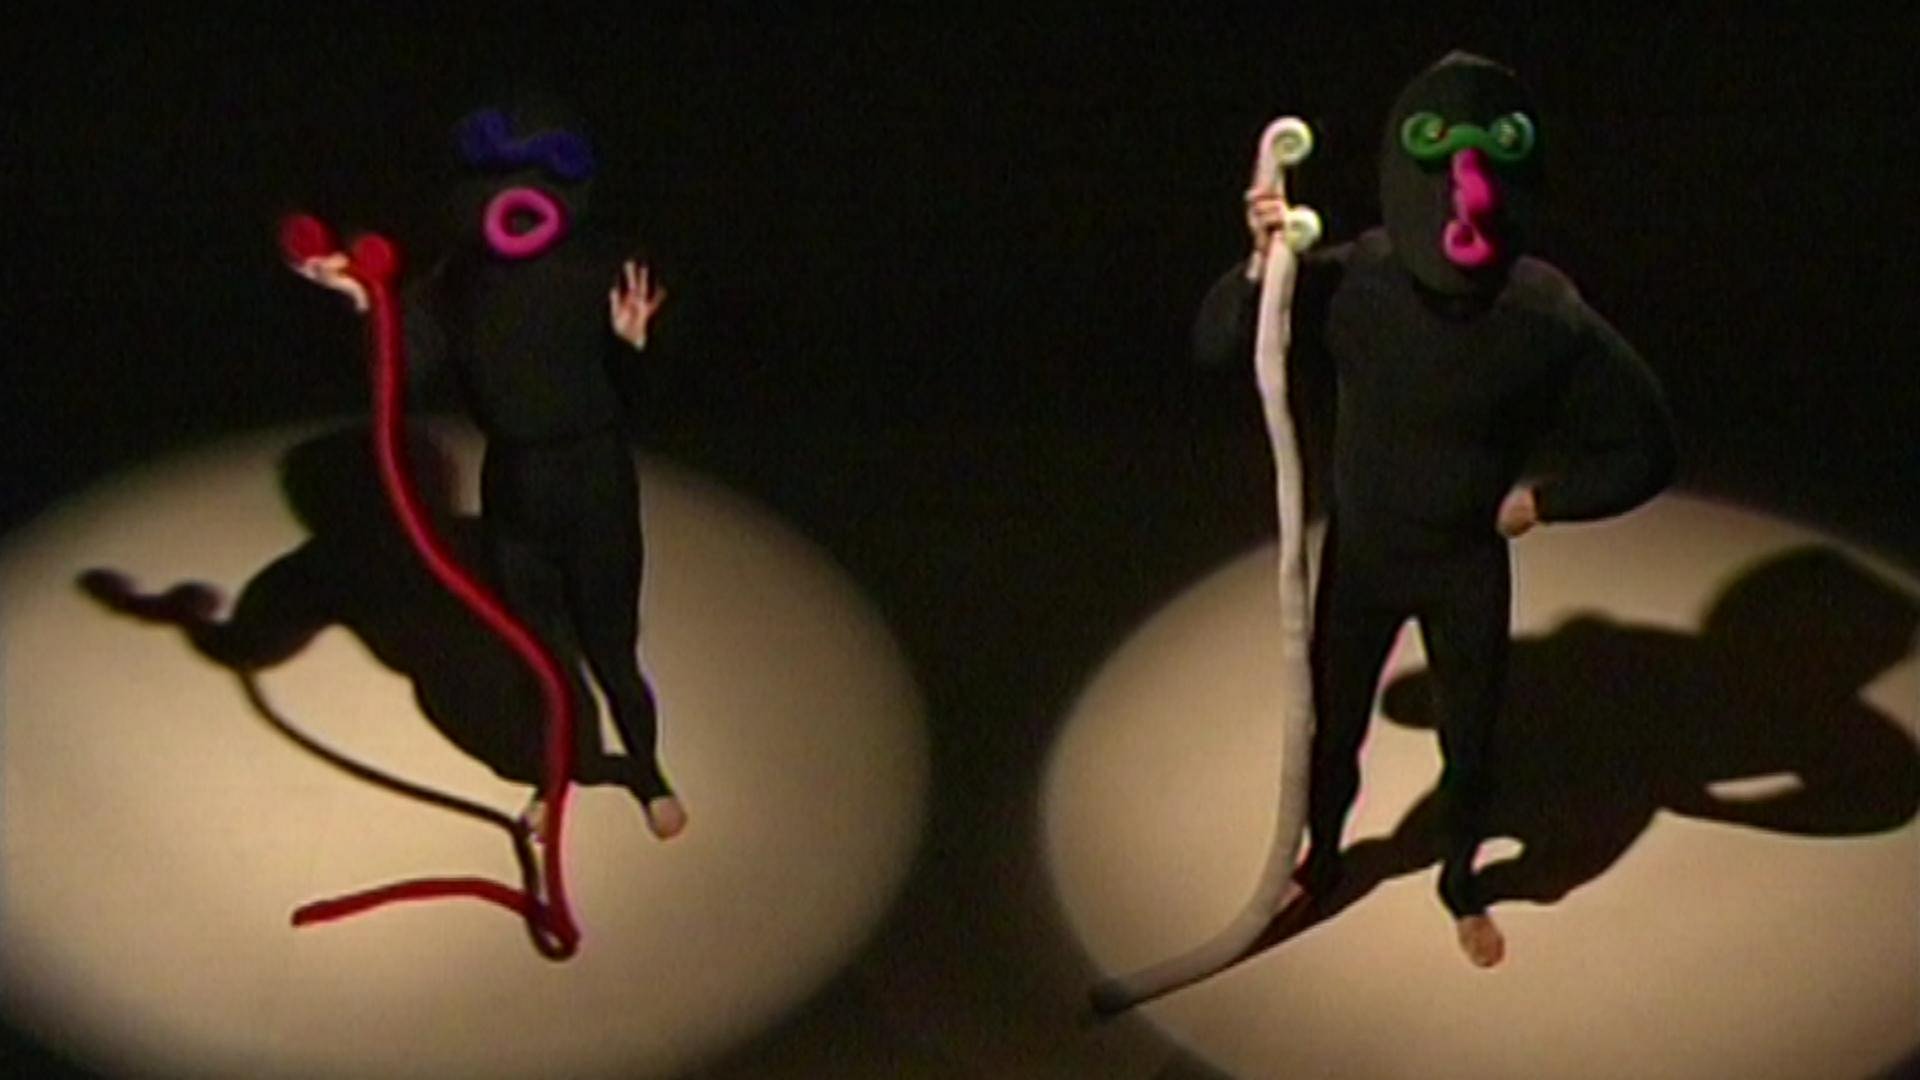 Das phantastische Maskentheater (4) · Mummenschanz - Vom Umgang miteinander